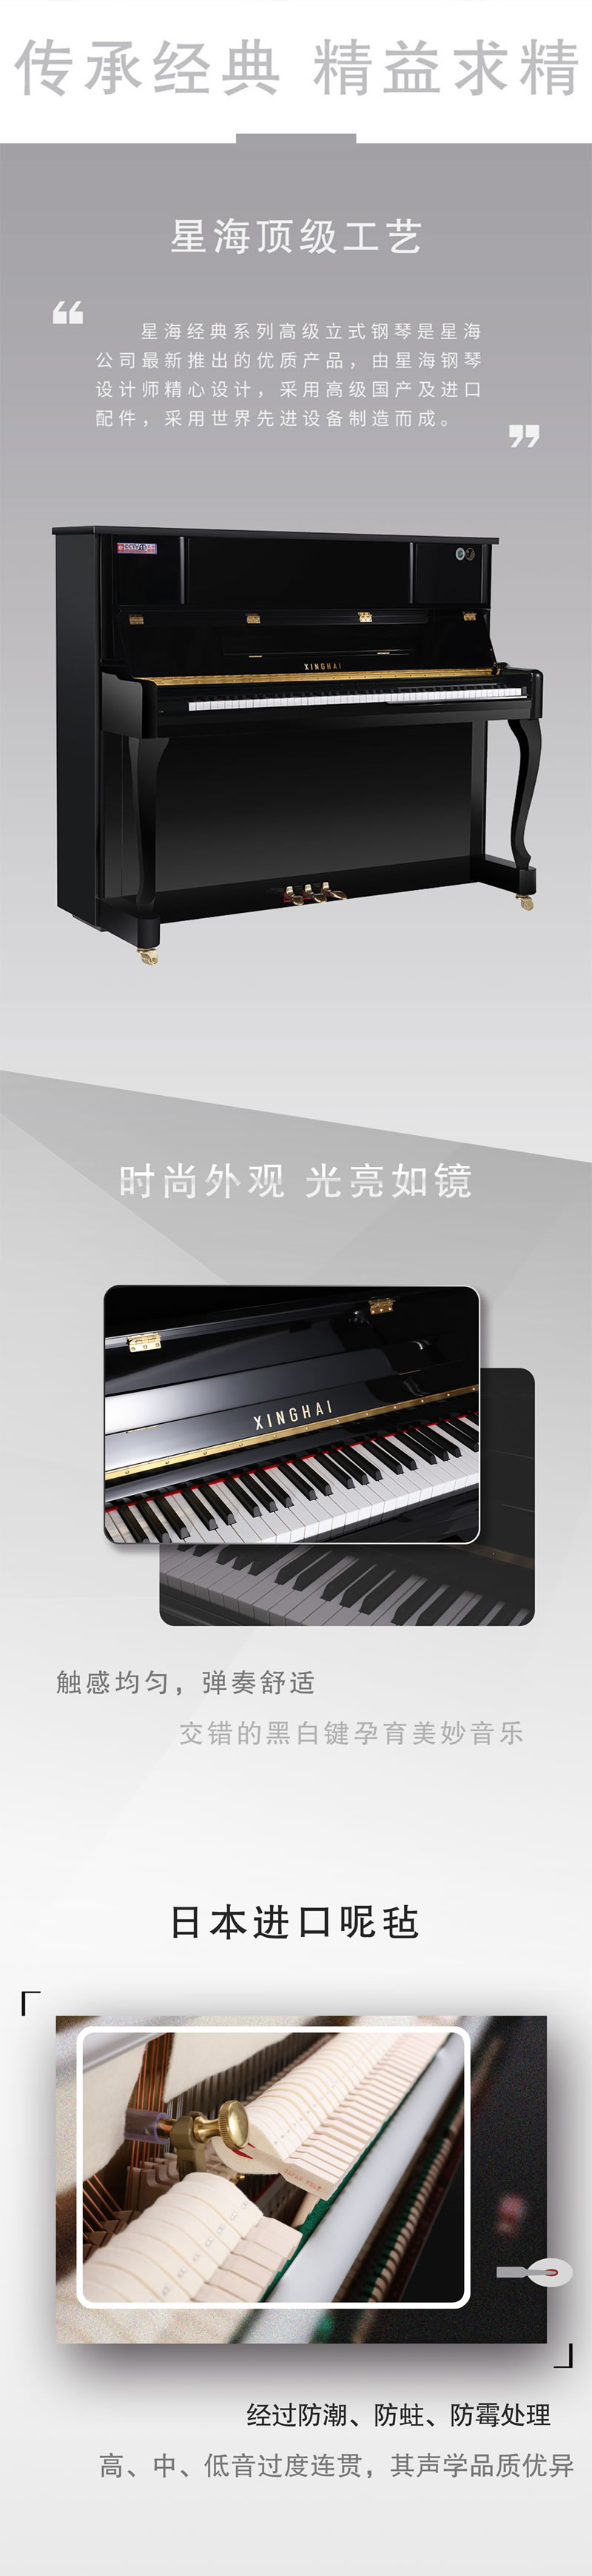 星海钢琴立式全新标准88键XU-123BJ